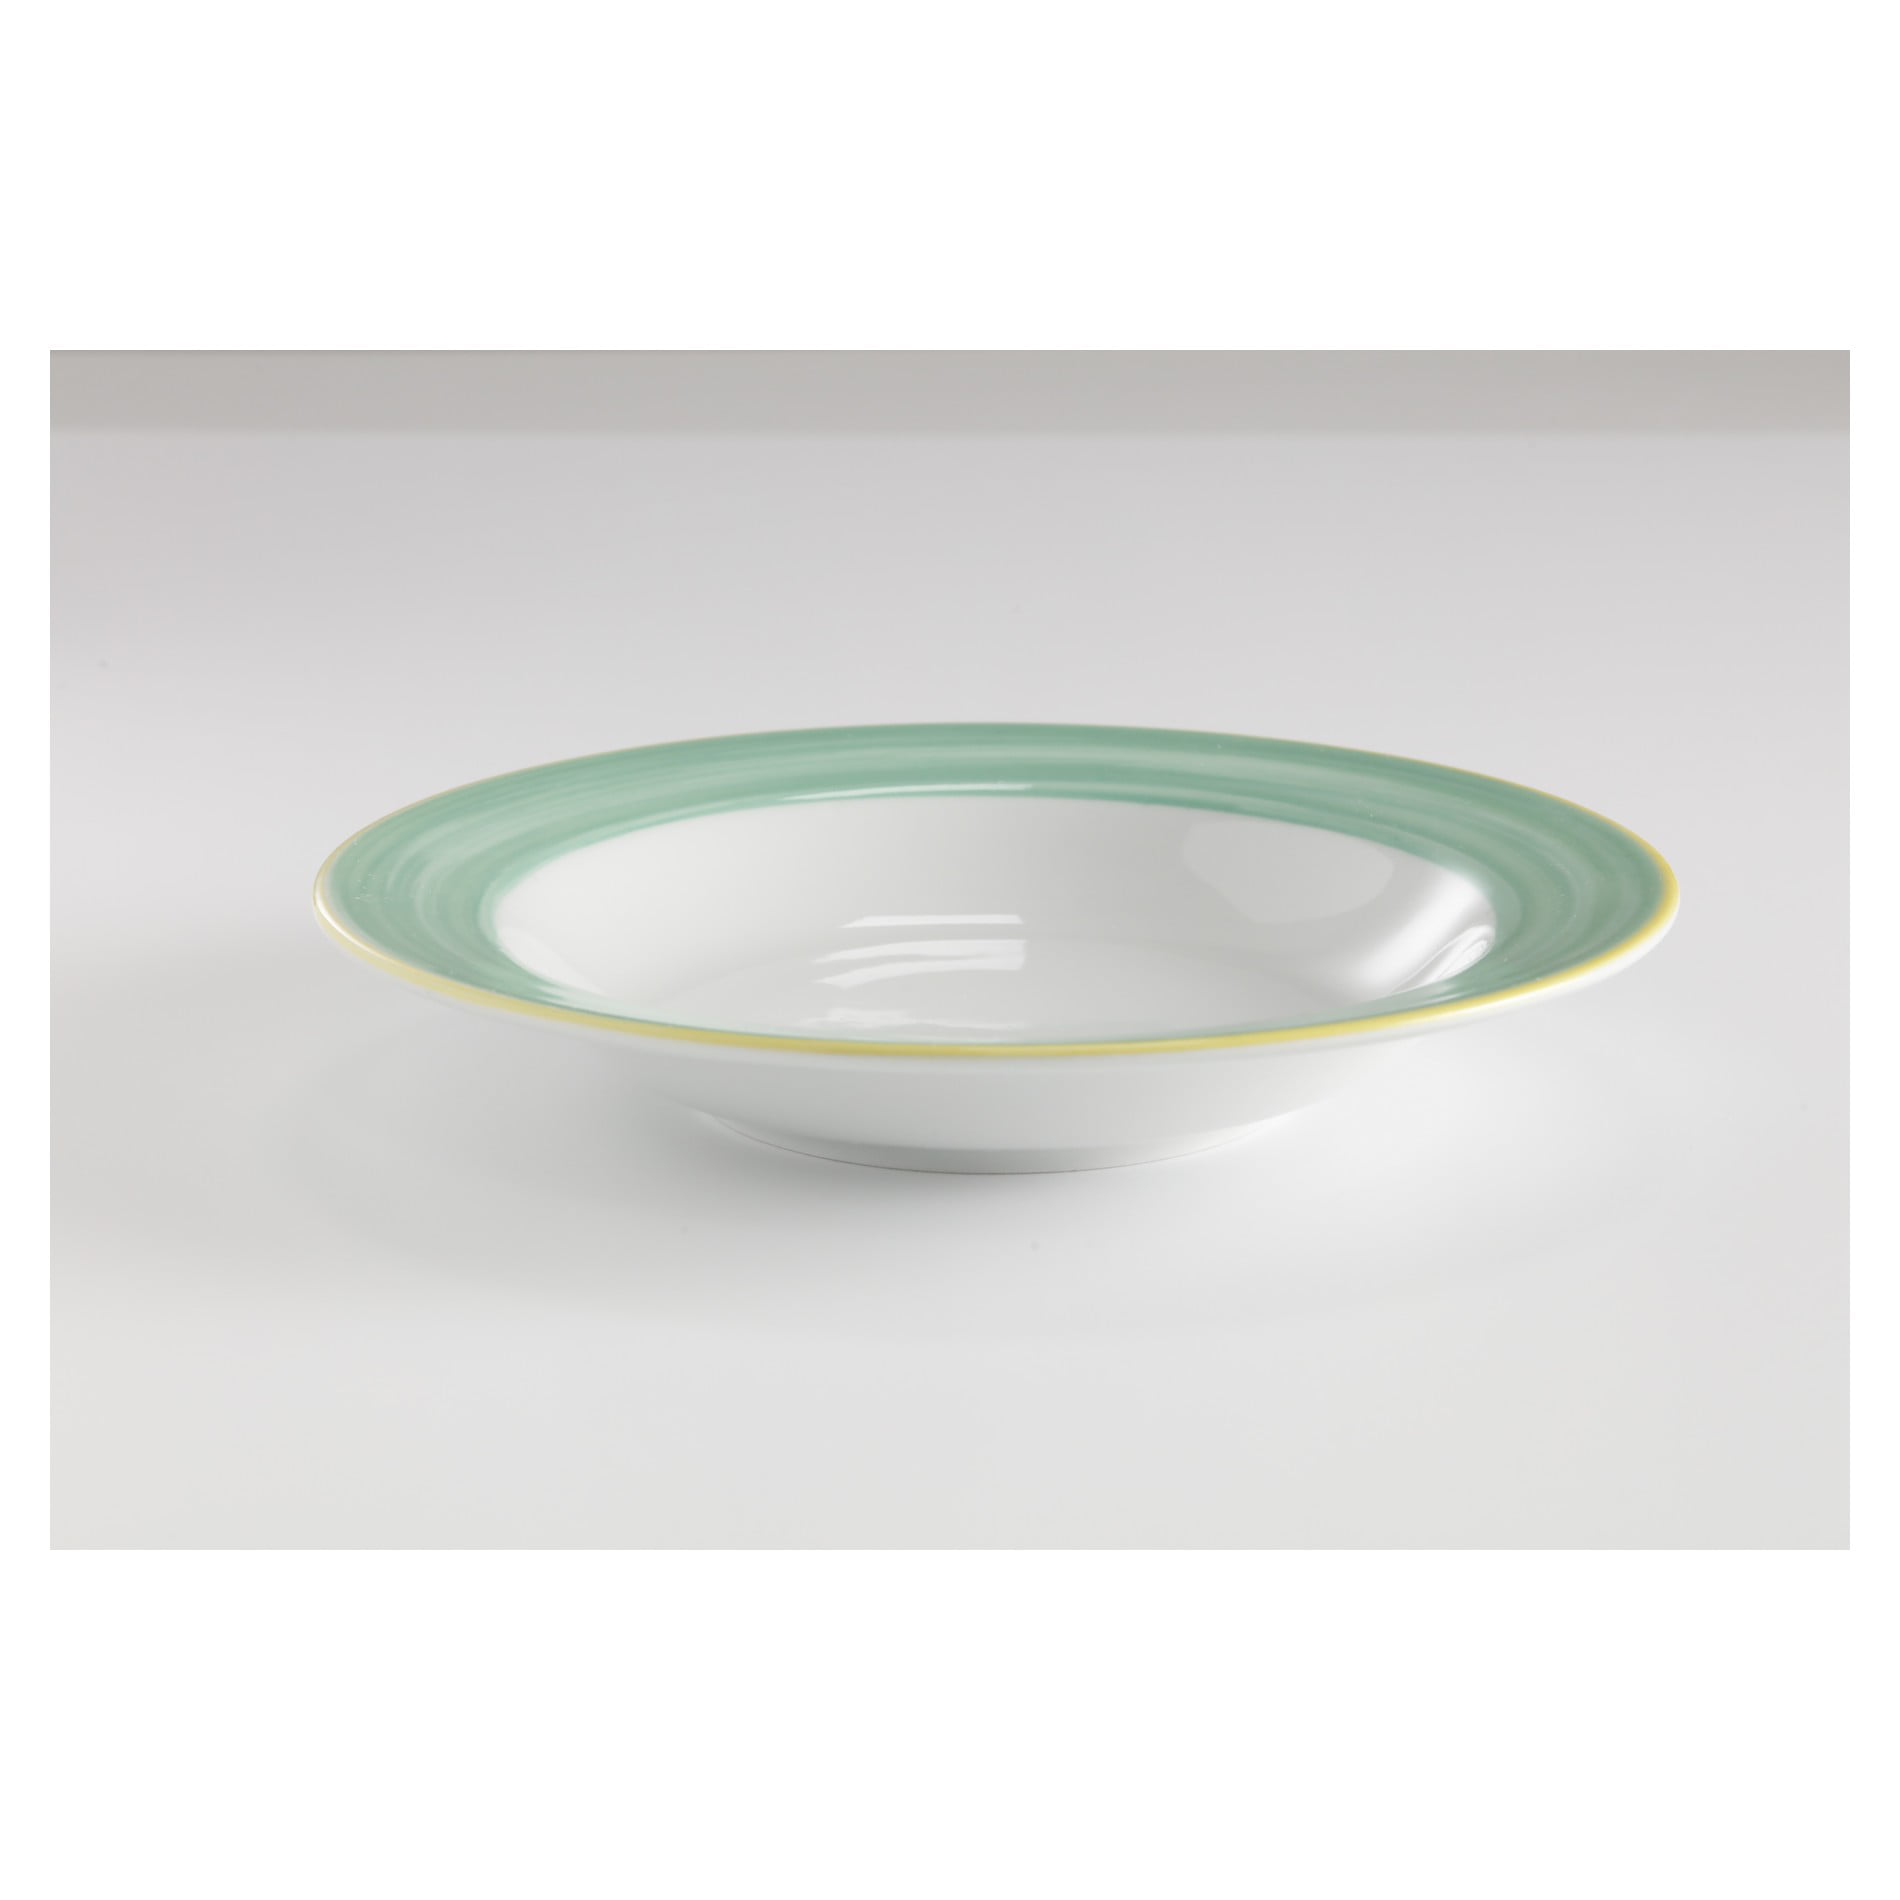 gastronomic Porcelain Plate Deep Eat eller NEW Pasta Plate show original title Details about   Soup Plates Square 8 St 